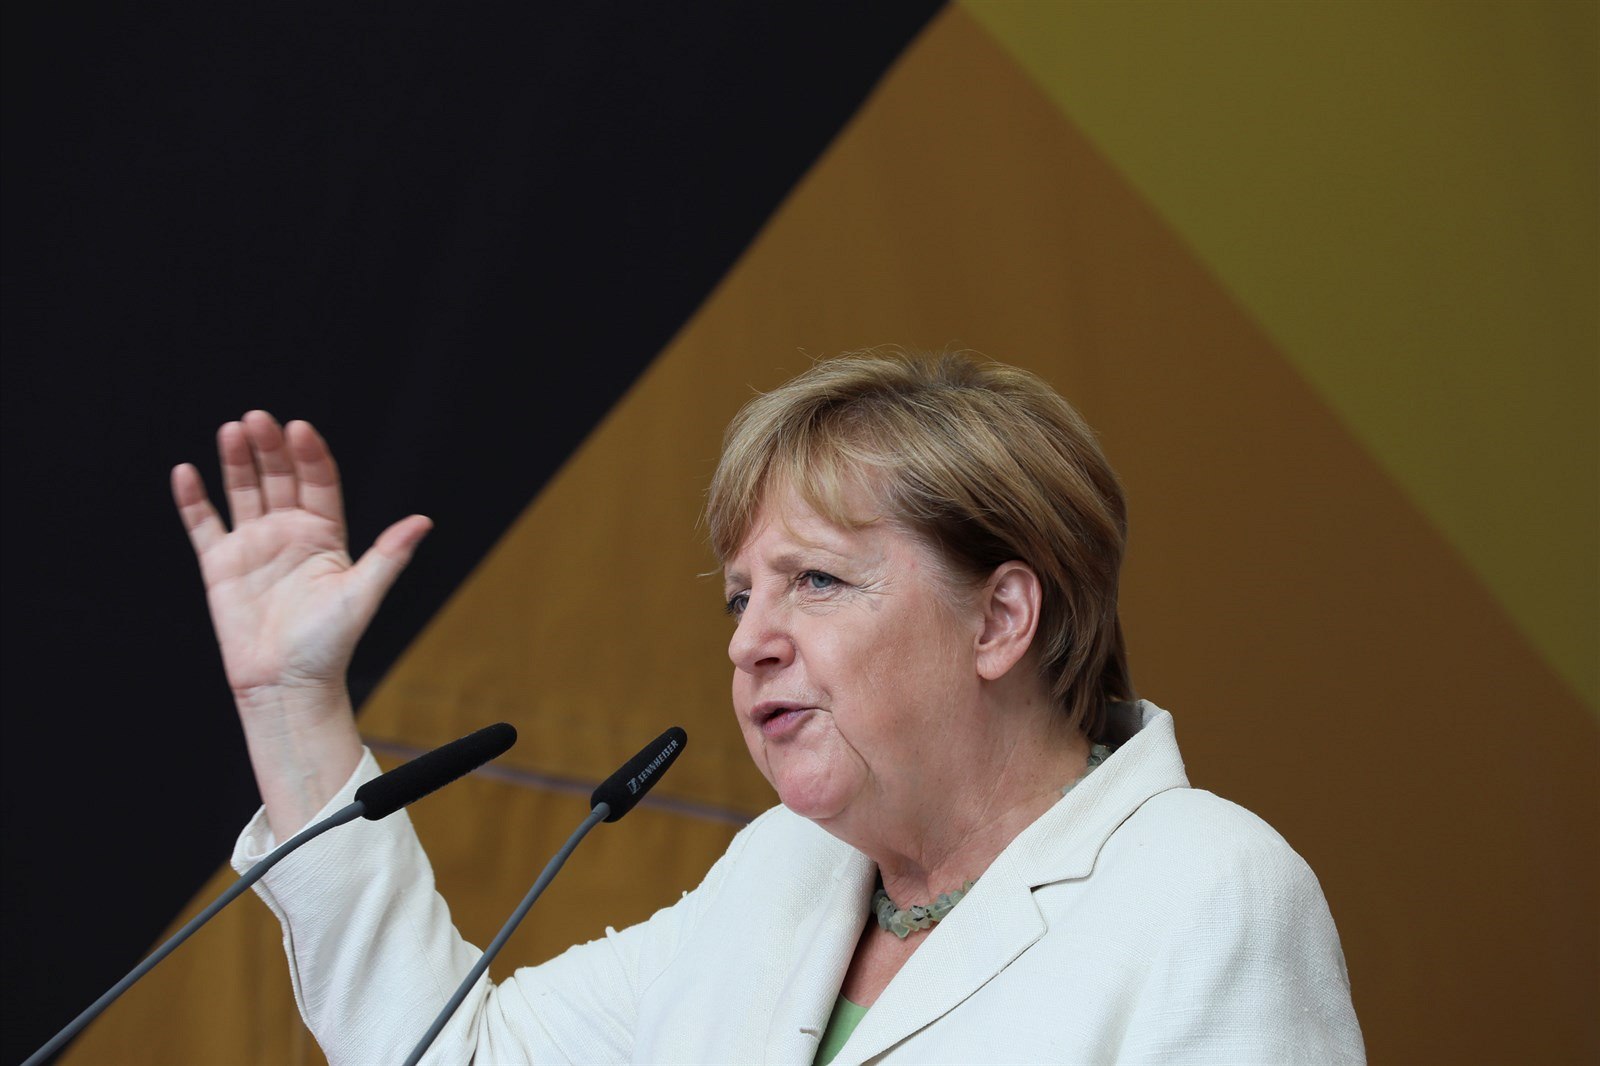 Pro mnohé je Merkelová lhářka a podvodnice, pro jiné politik světového formátu.